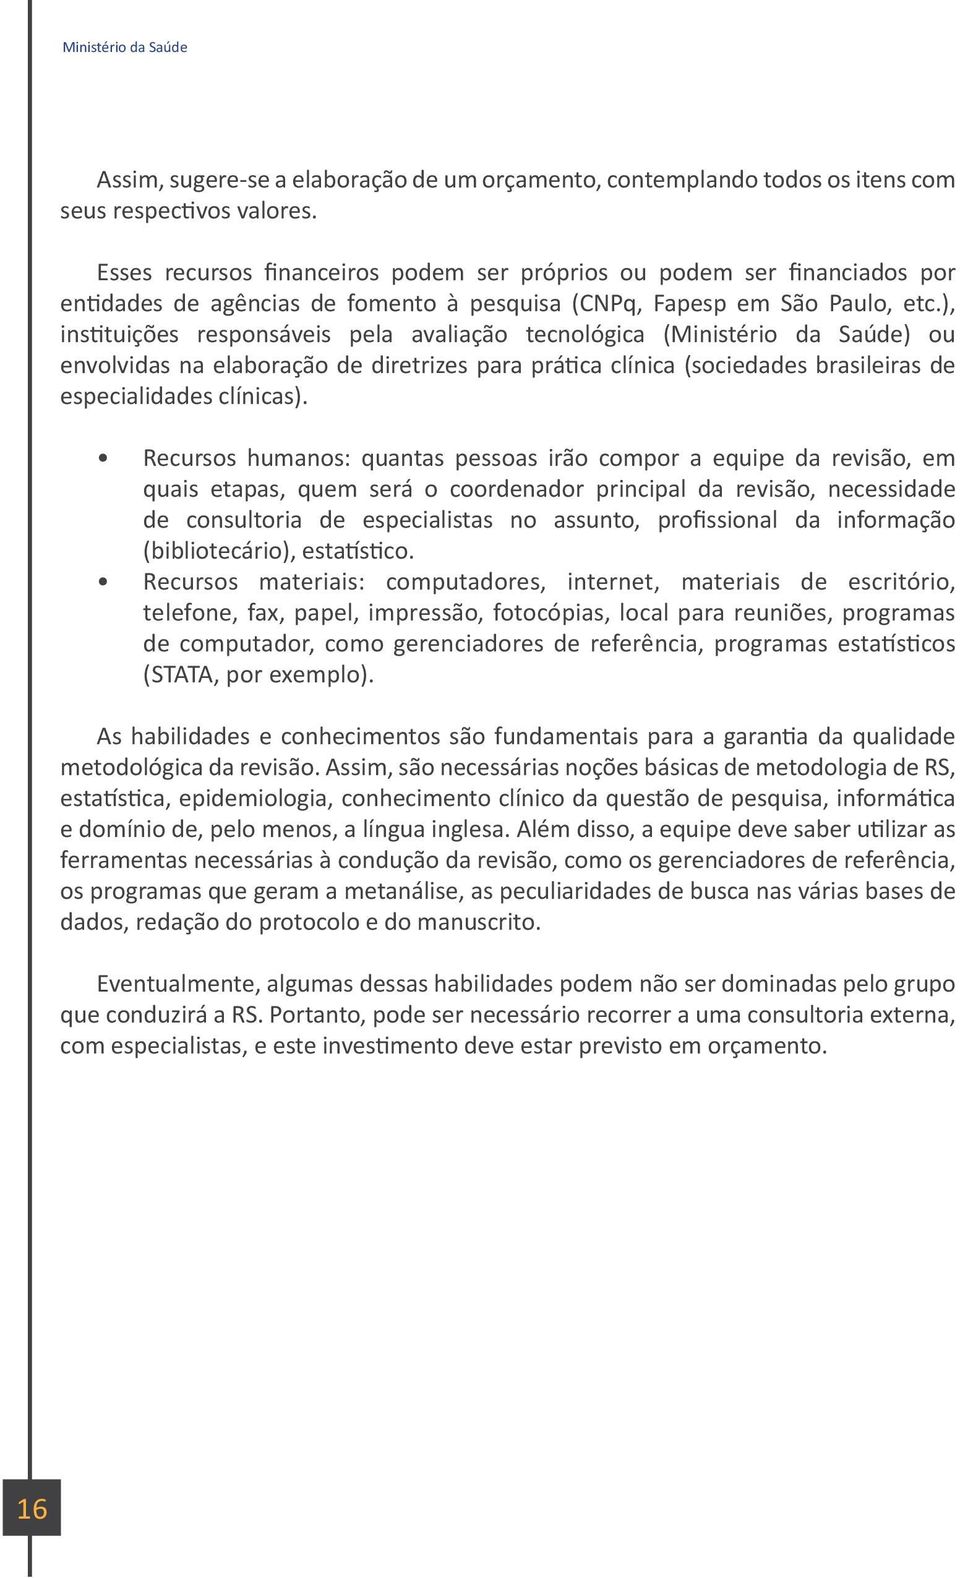 ), instituições responsáveis pela avaliação tecnológica (Ministério da Saúde) ou envolvidas na elaboração de diretrizes para prática clínica (sociedades brasileiras de especialidades clínicas).